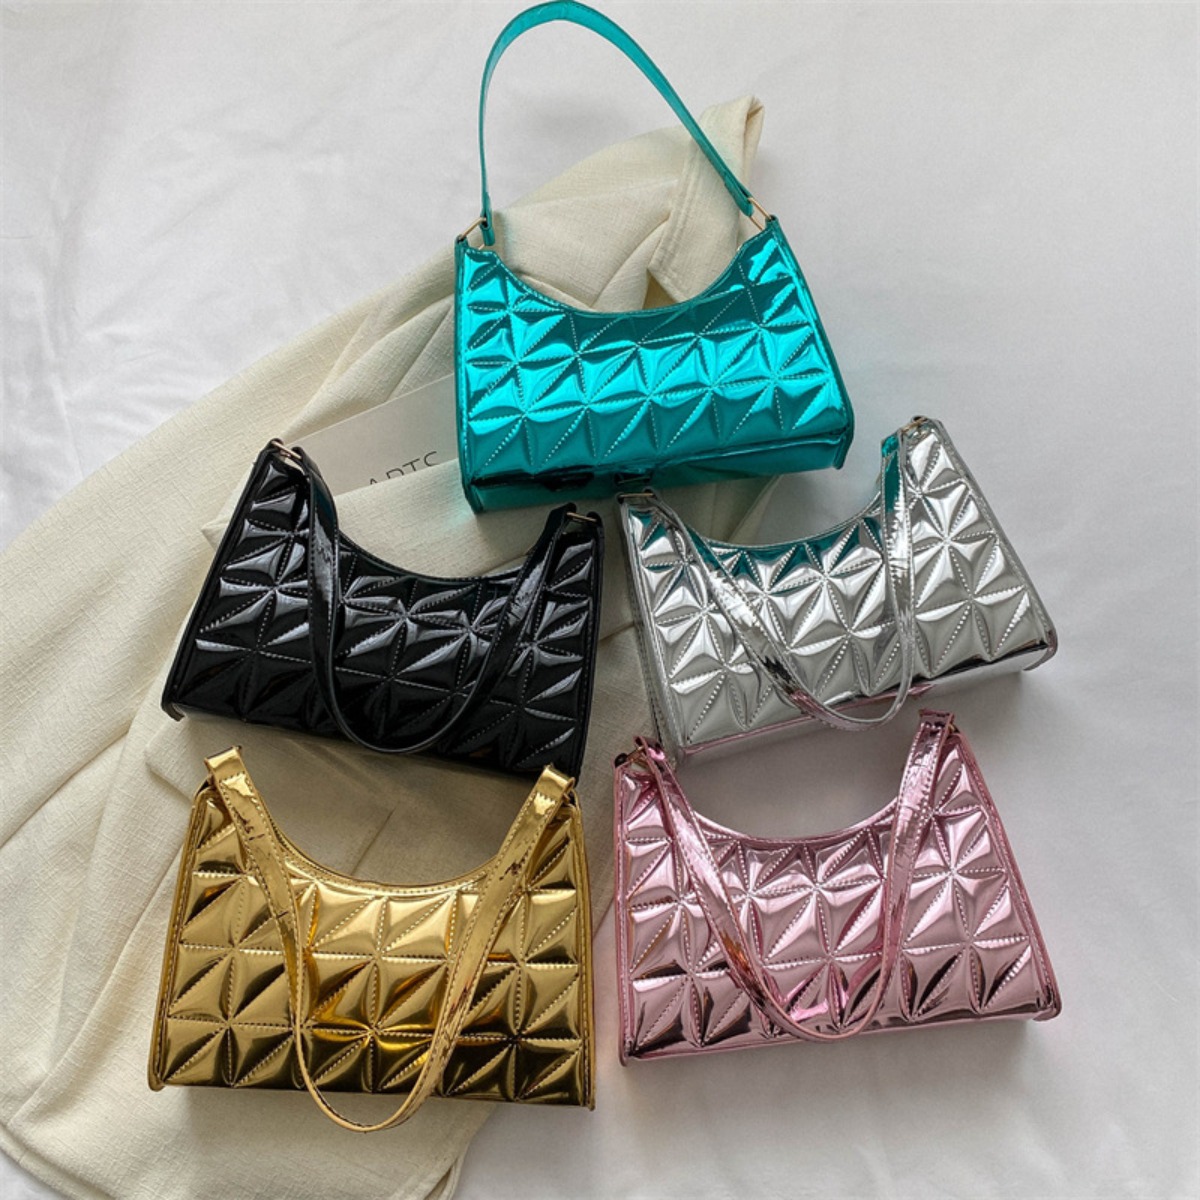 tas sling-bag Bao Bao Issey Miyake Pink Metallic Messenger Sling